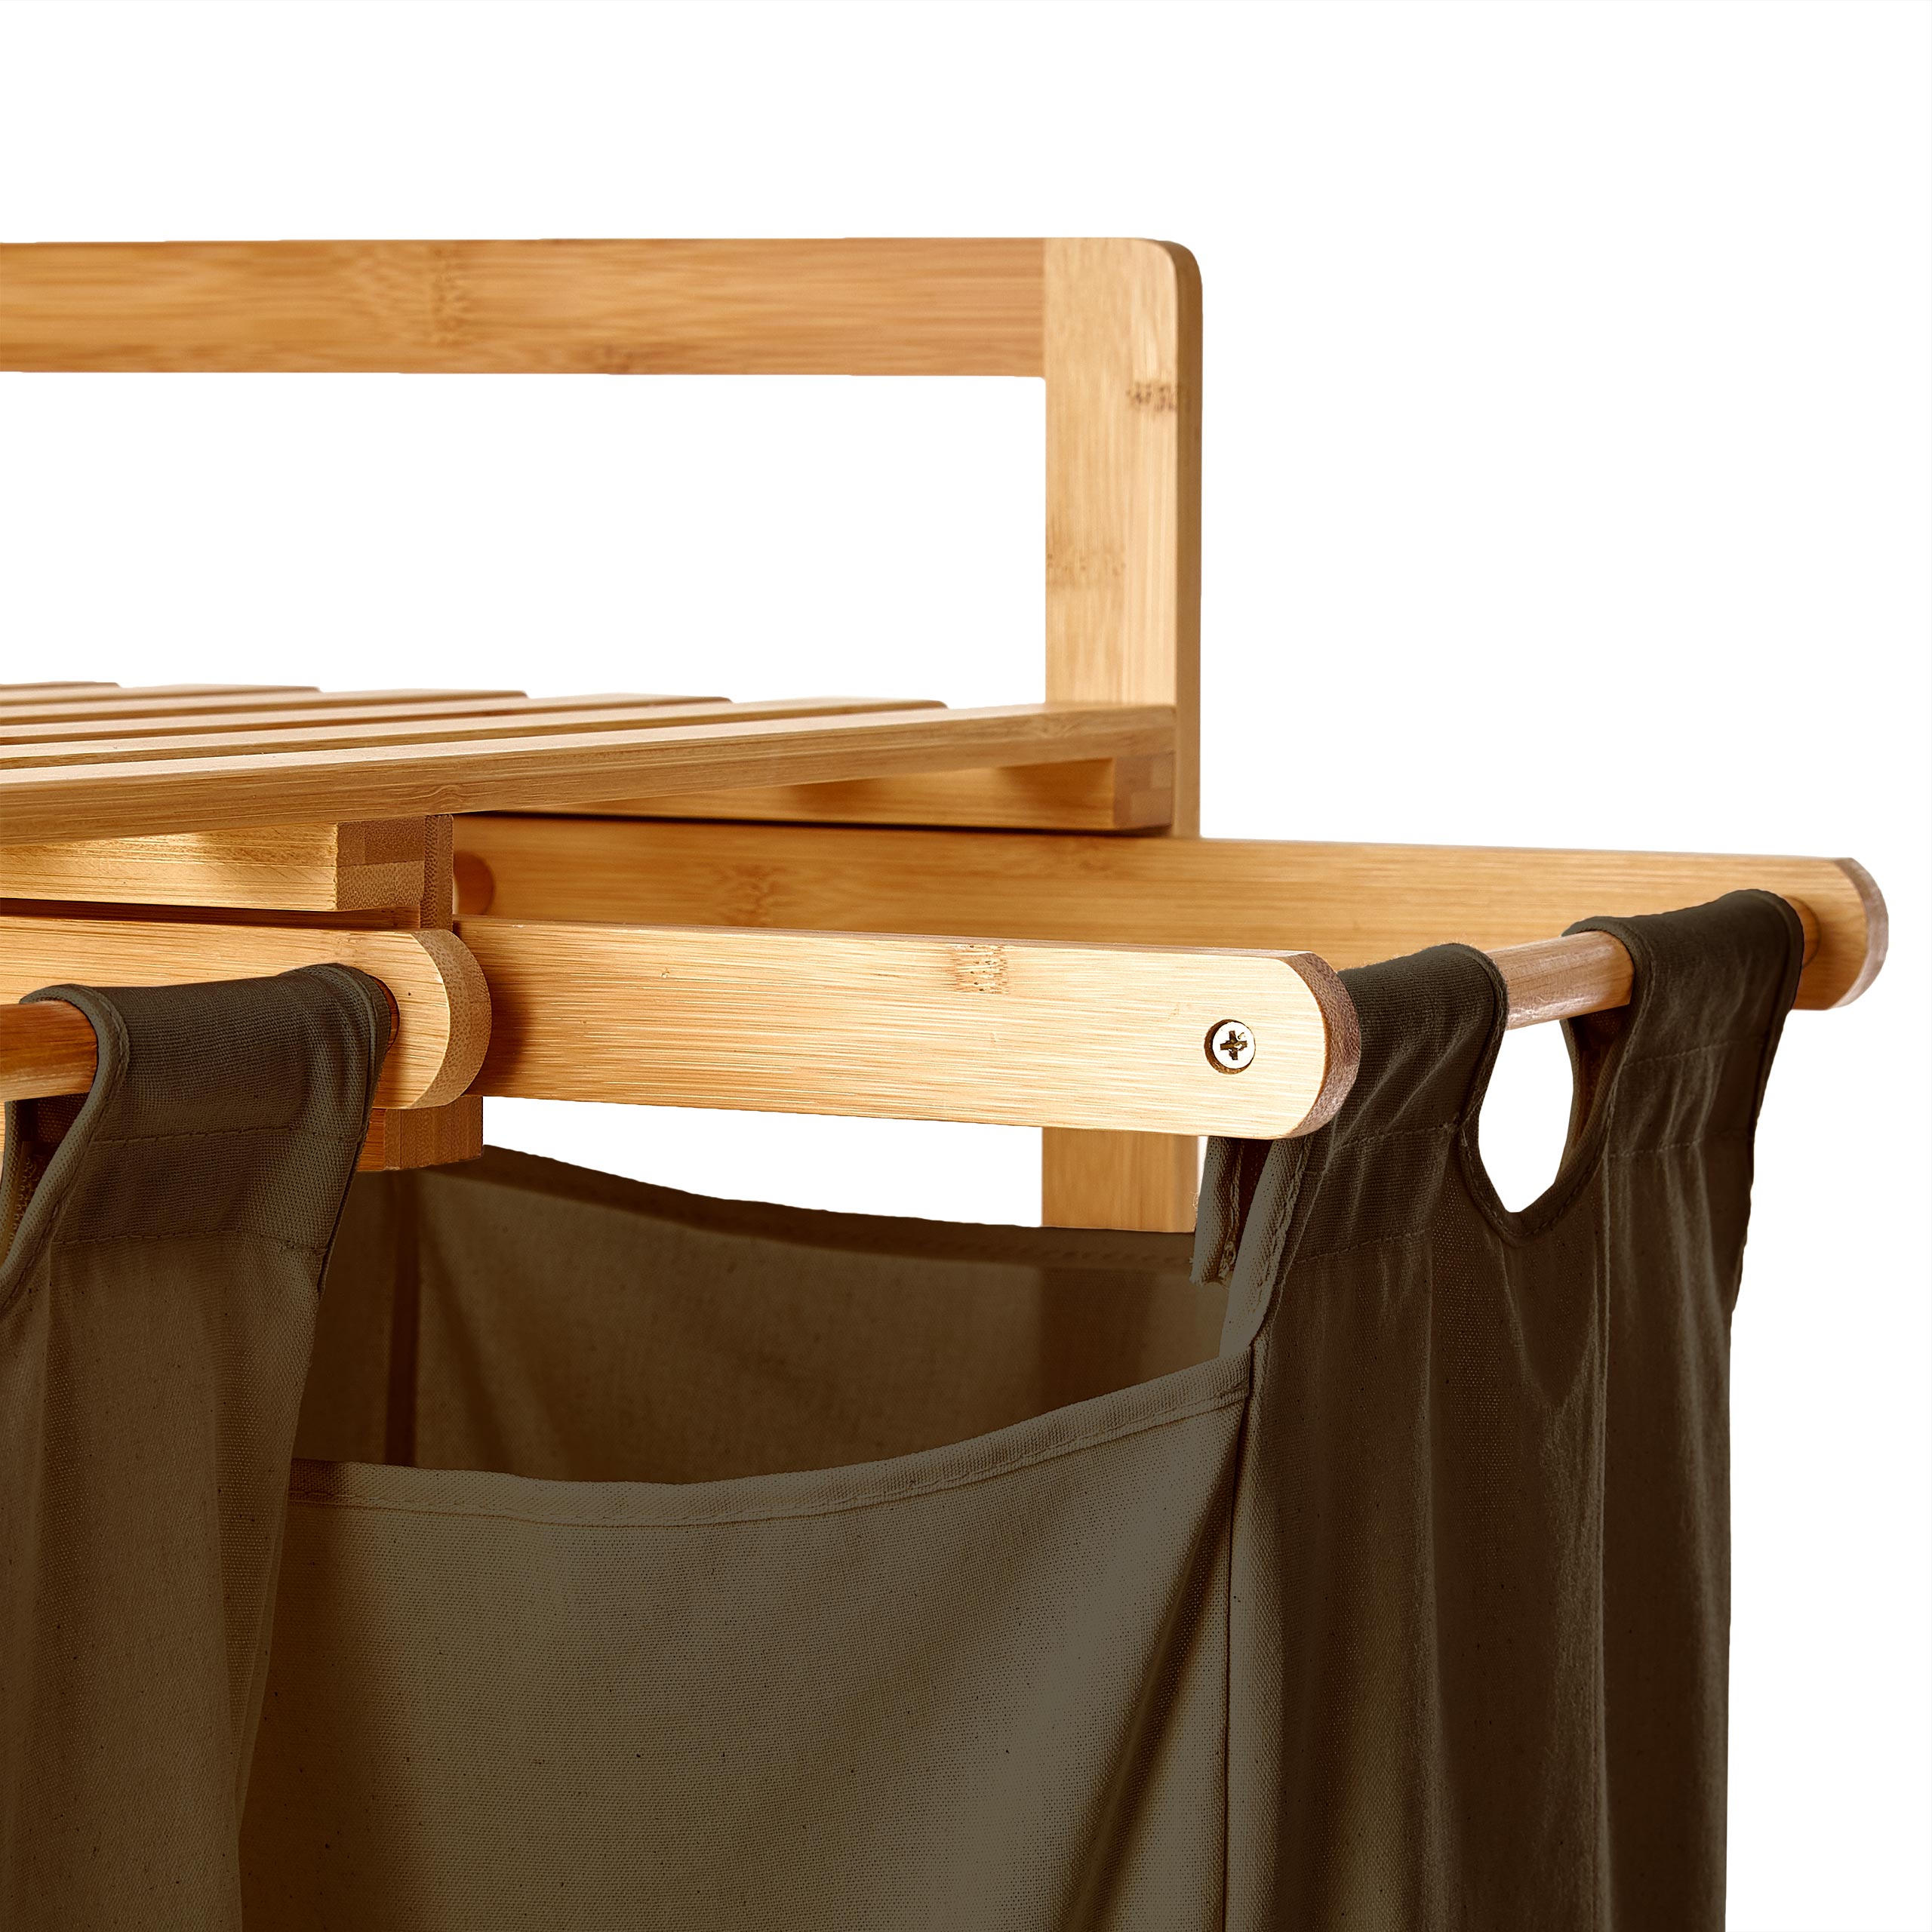 Bambus Wäschekorb mit 2 ausziehbaren Wäschesacken - 73 x 64 x 33 cm - Oliv